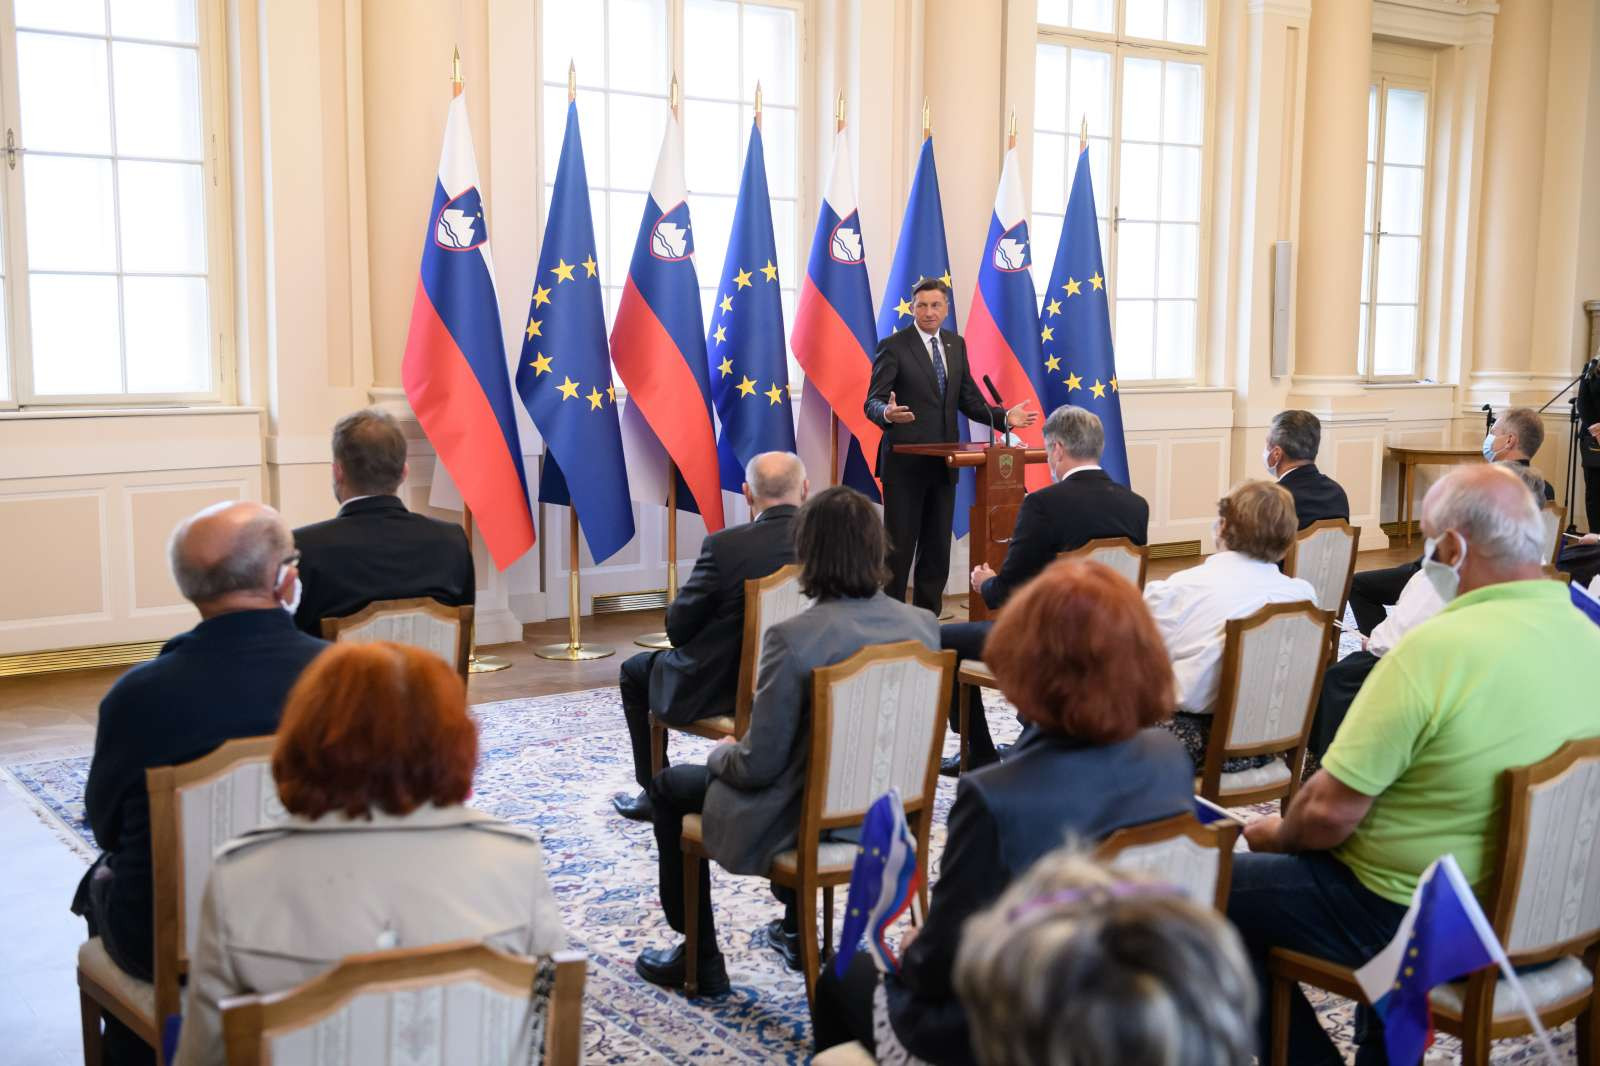 Nagovor predsednika republike Boruta Pahorja v počastitev dneva Primoža Trubarja. Ob državnem prazniku, dnevu Primoža Trubarja, je predsednik republike Borut Pahor dopoldne odprl vrata svoje palače za obiskovalce in vabljene.